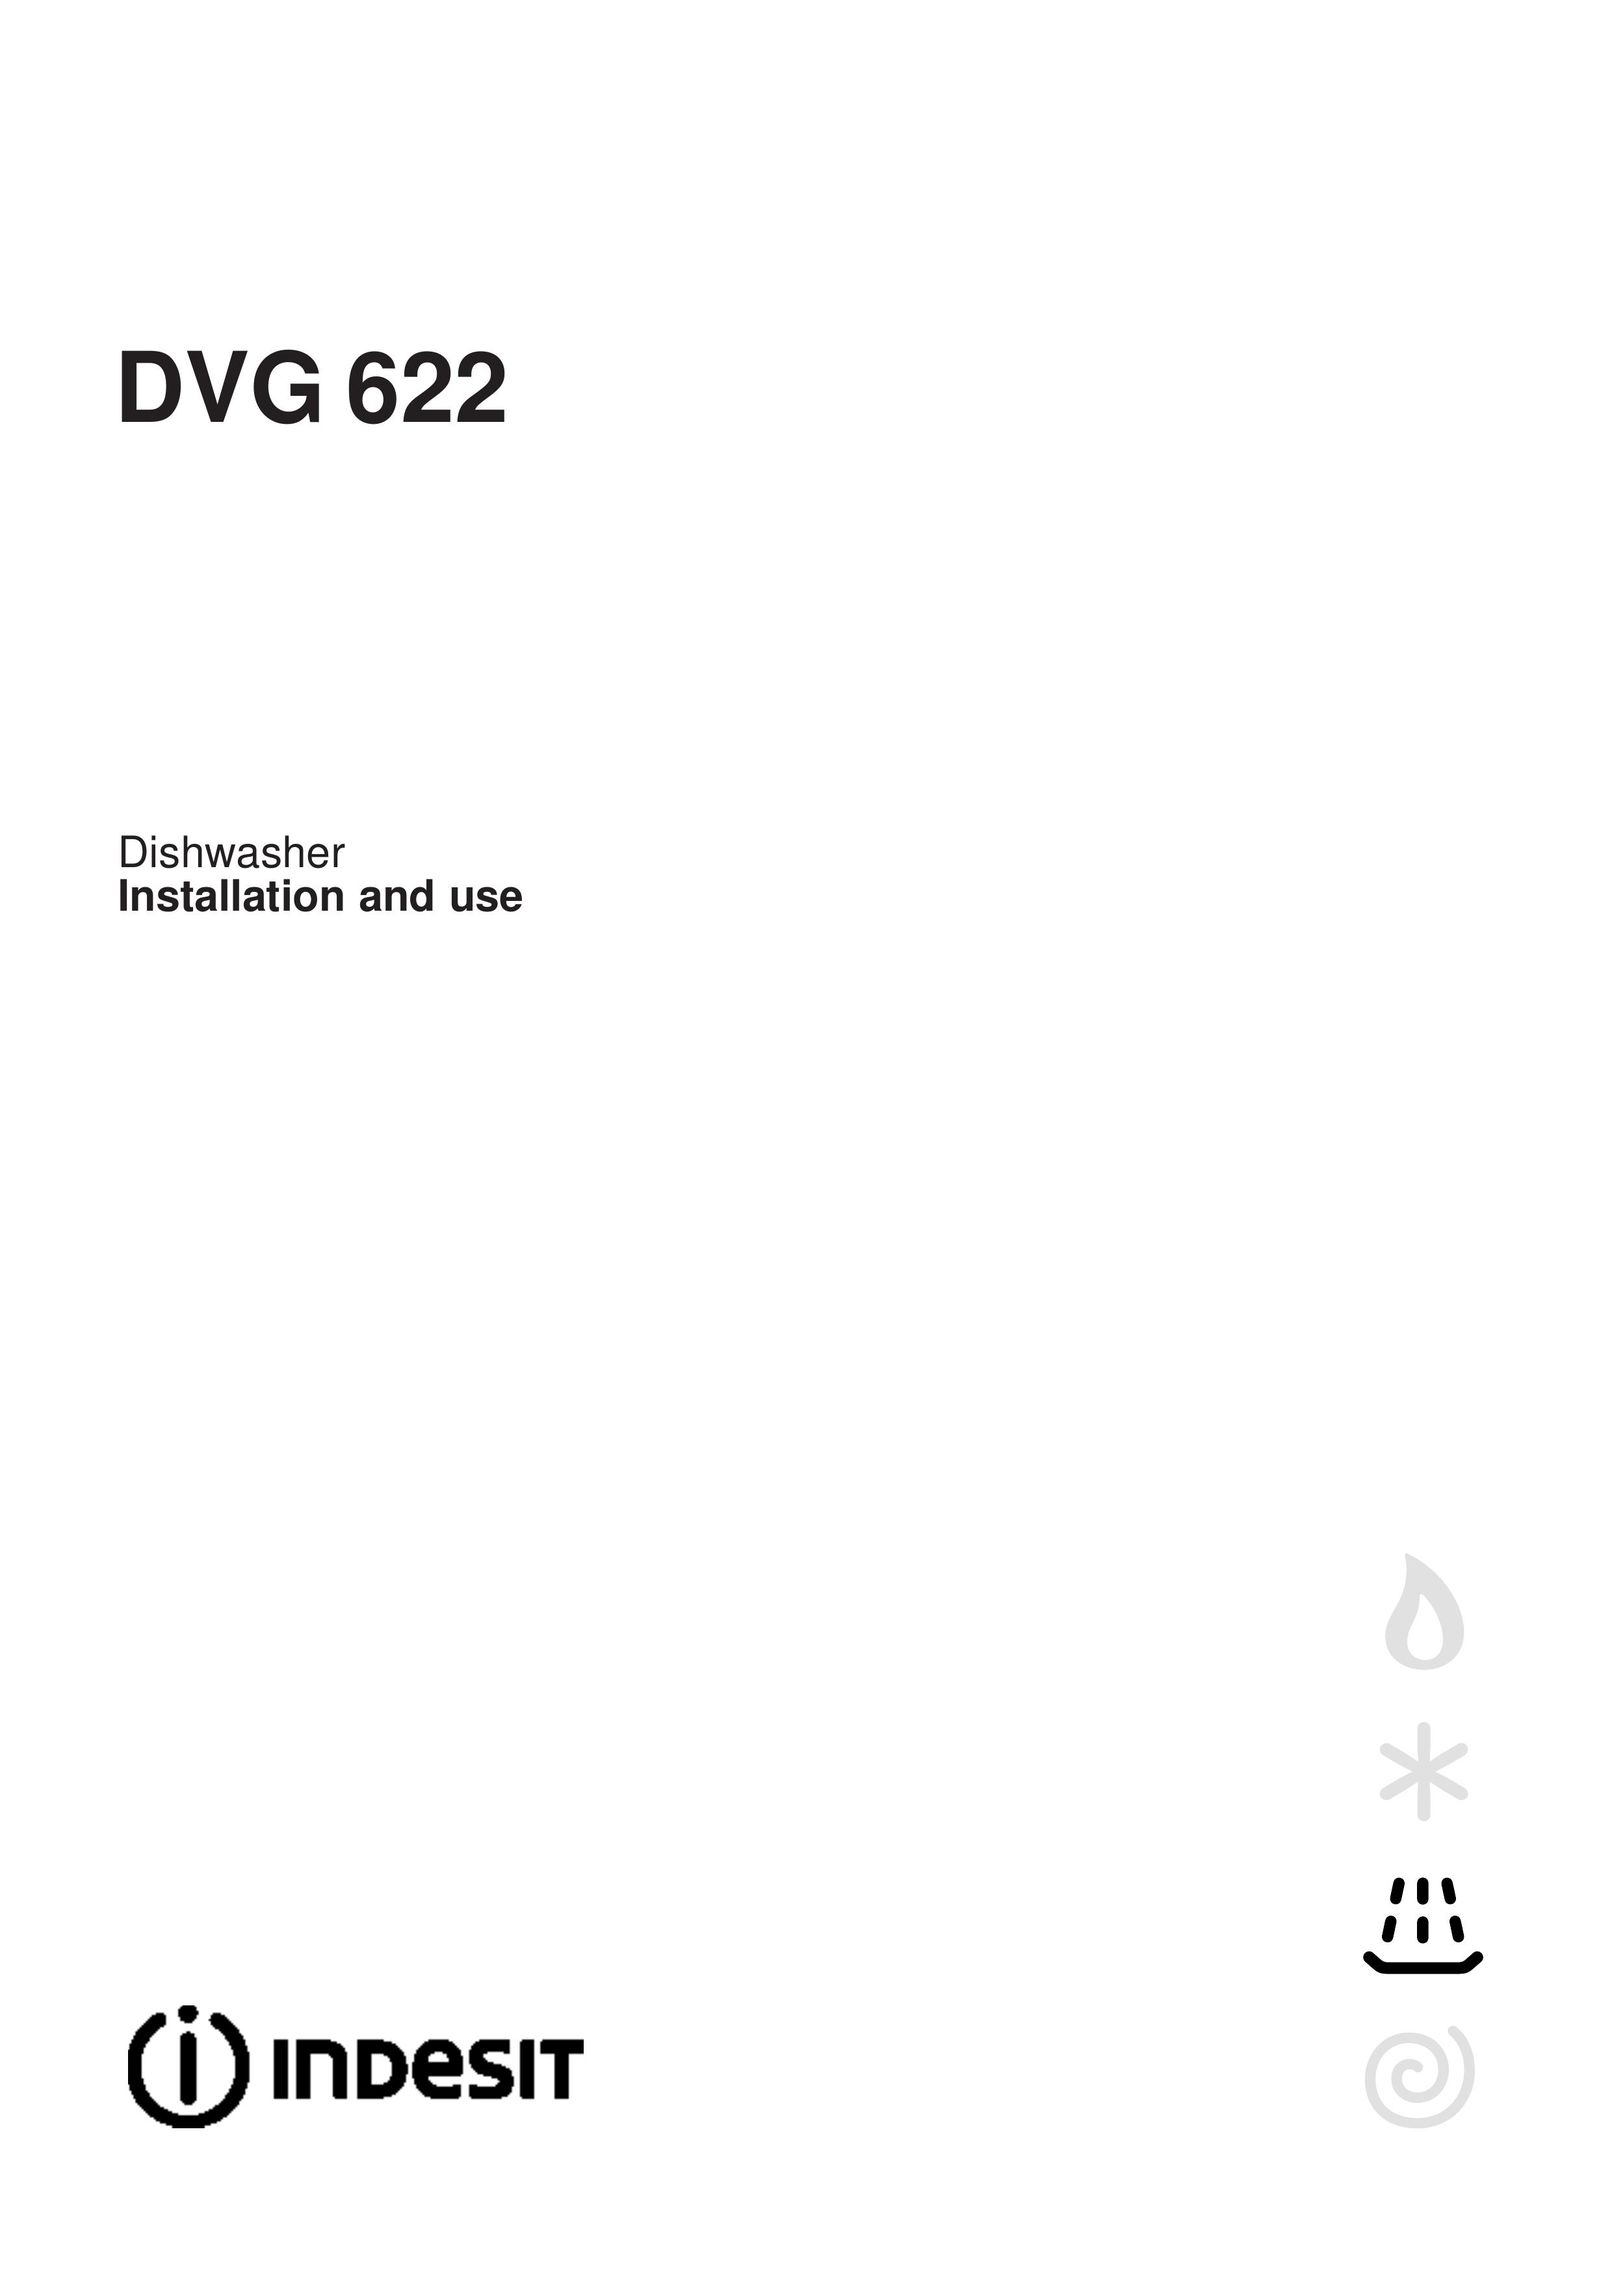 Indesit DVG 622 Dishwasher User Manual